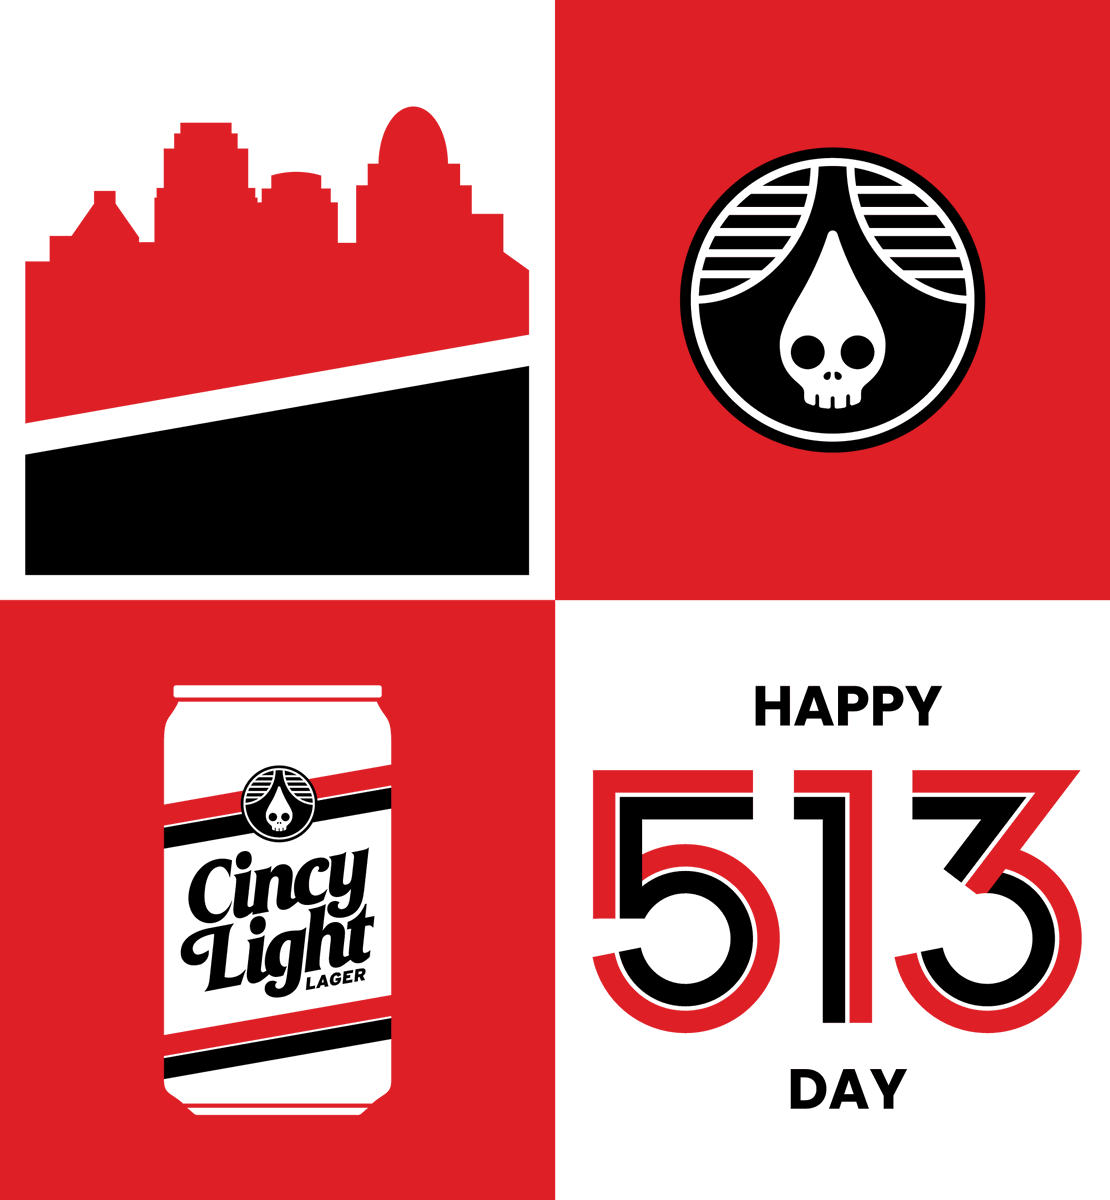 Happy #513Day Cincinnati!